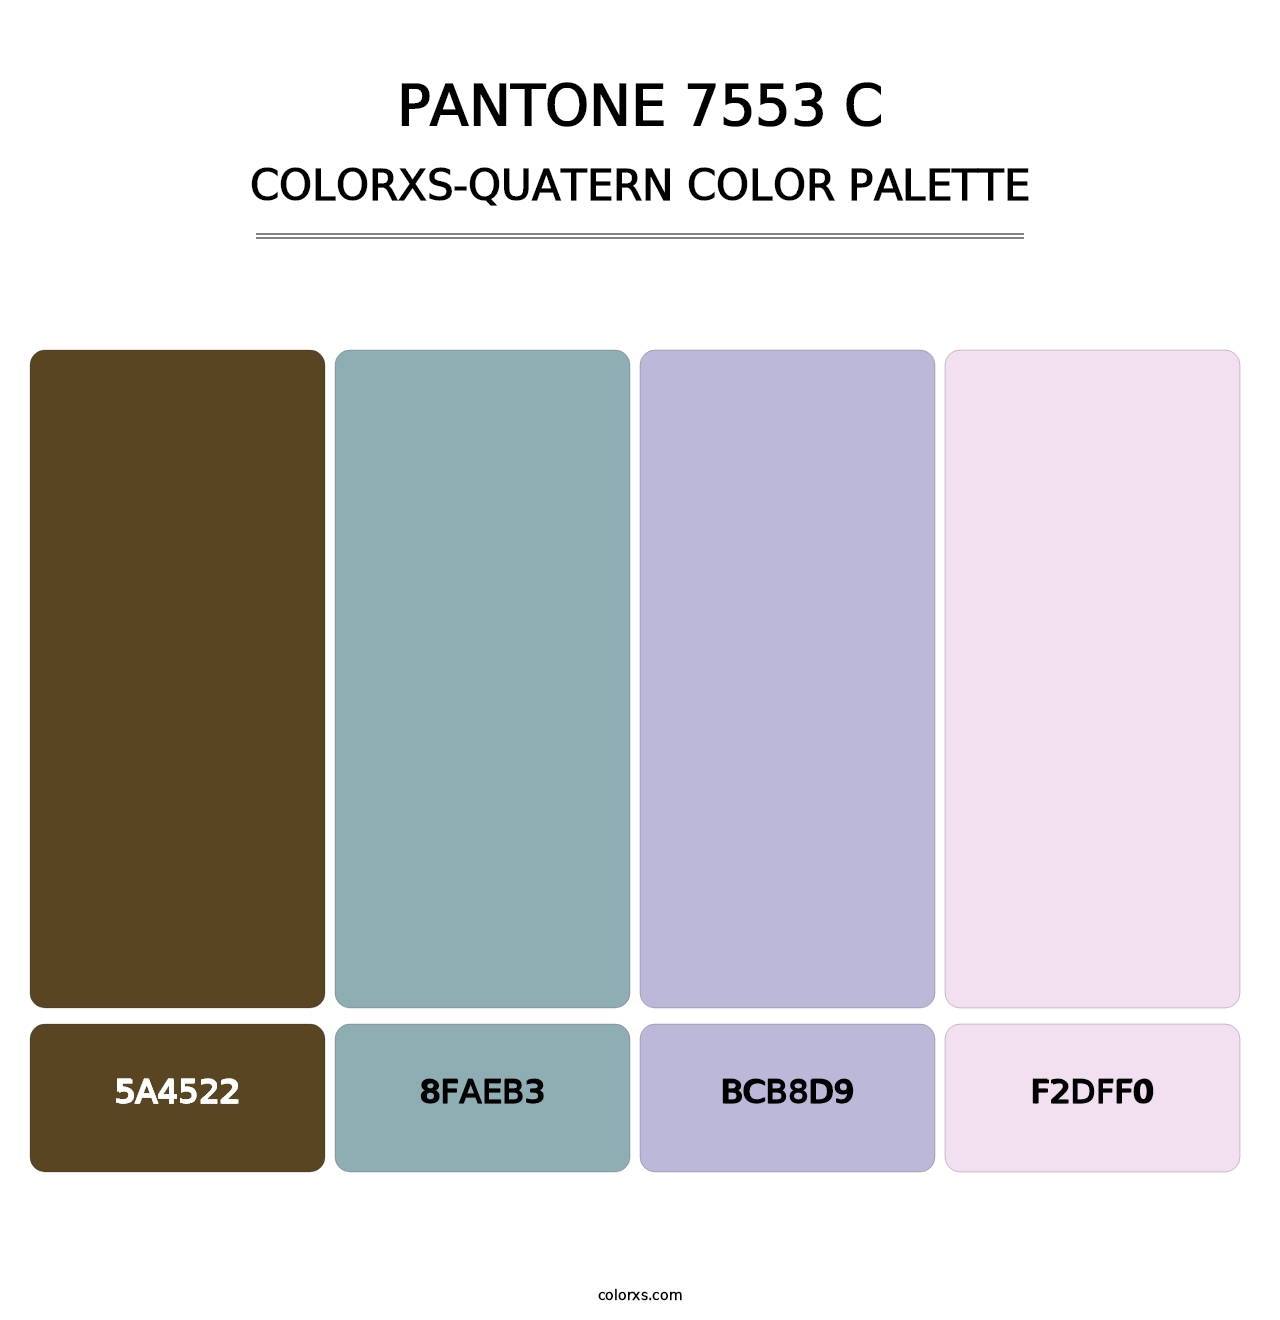 PANTONE 7553 C - Colorxs Quatern Palette